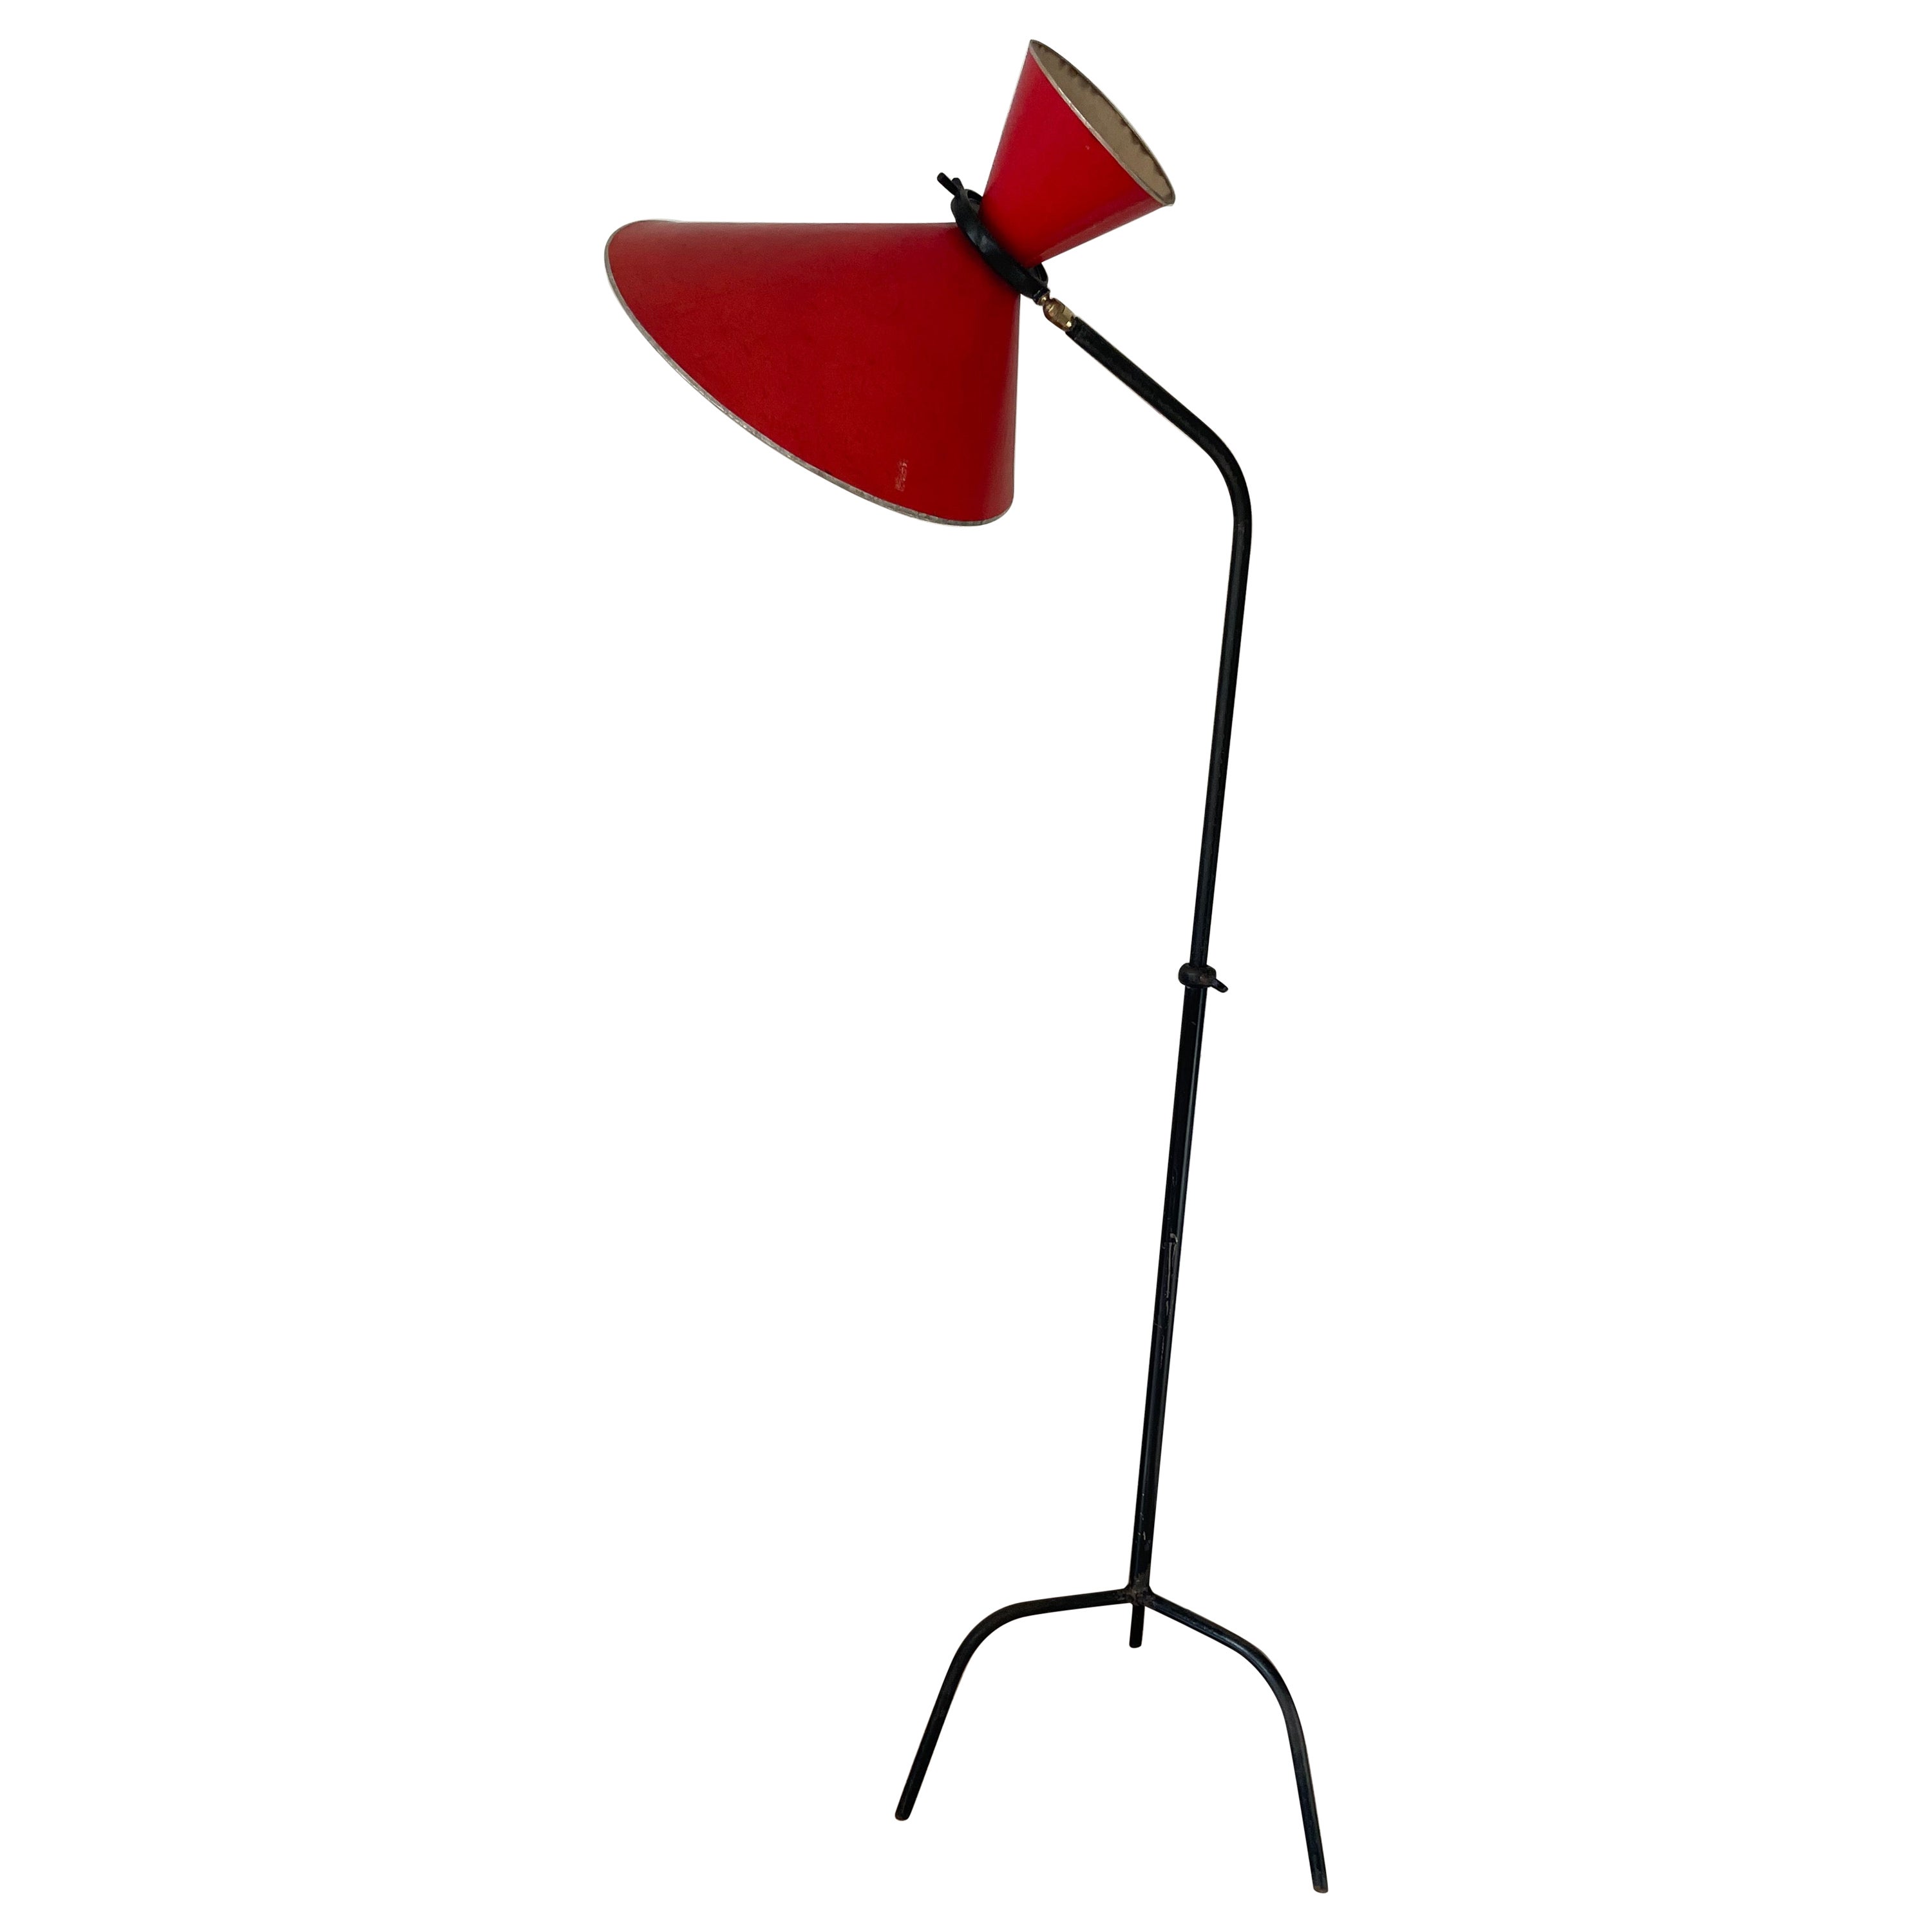 Verstellbare Stehlampe der 50er Jahre mit rotem Diabolo-Schirm von Maison Lunel, Frankreich 1954.